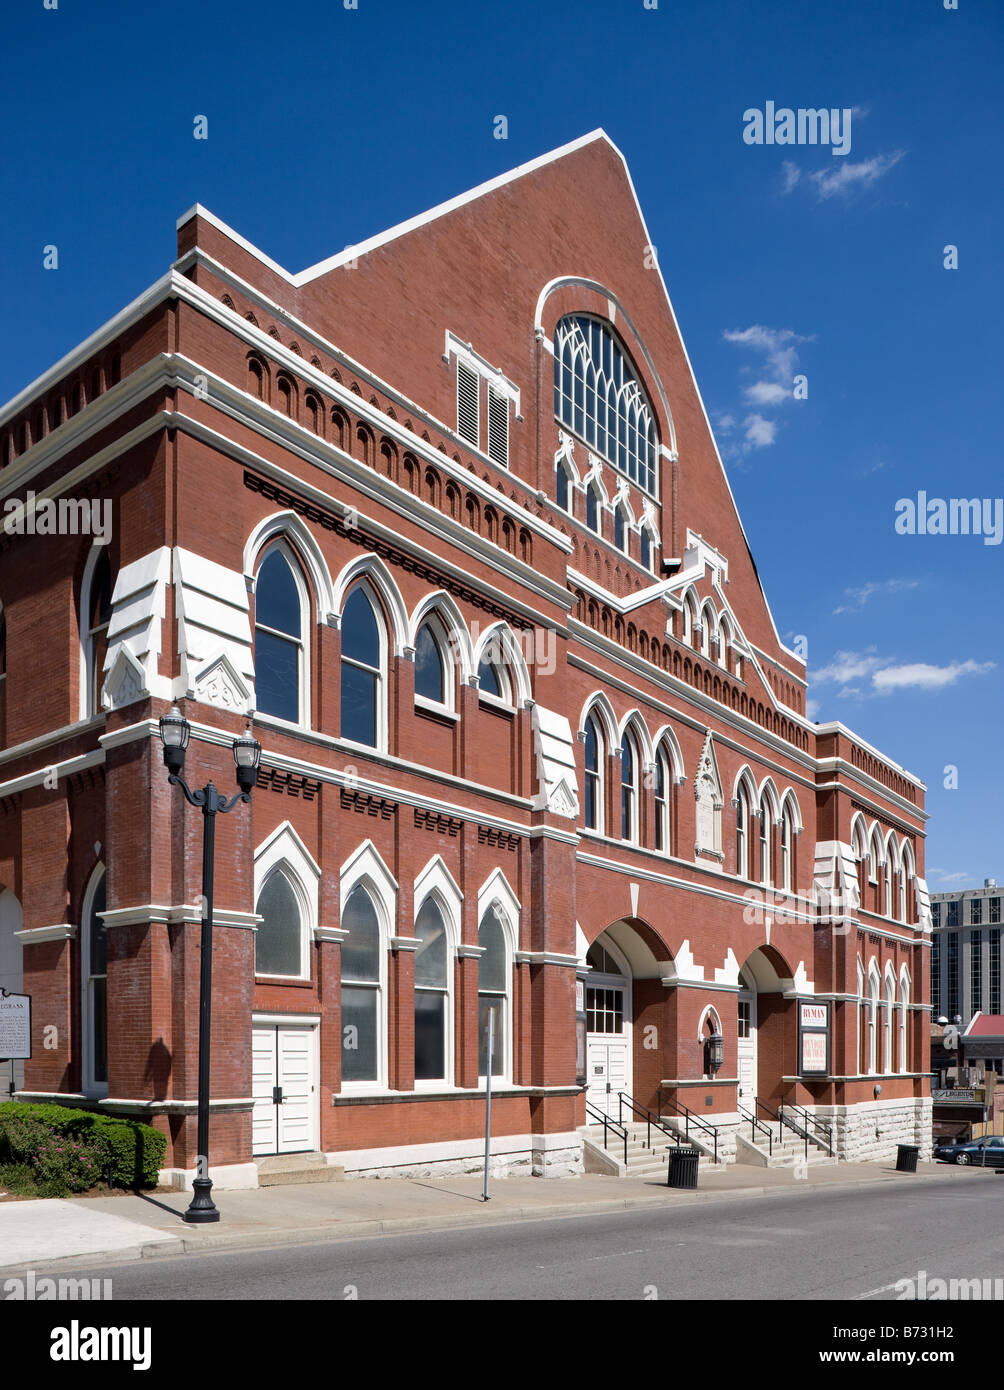 The Ryman Auditorium in Nashville, TN Stock Photo